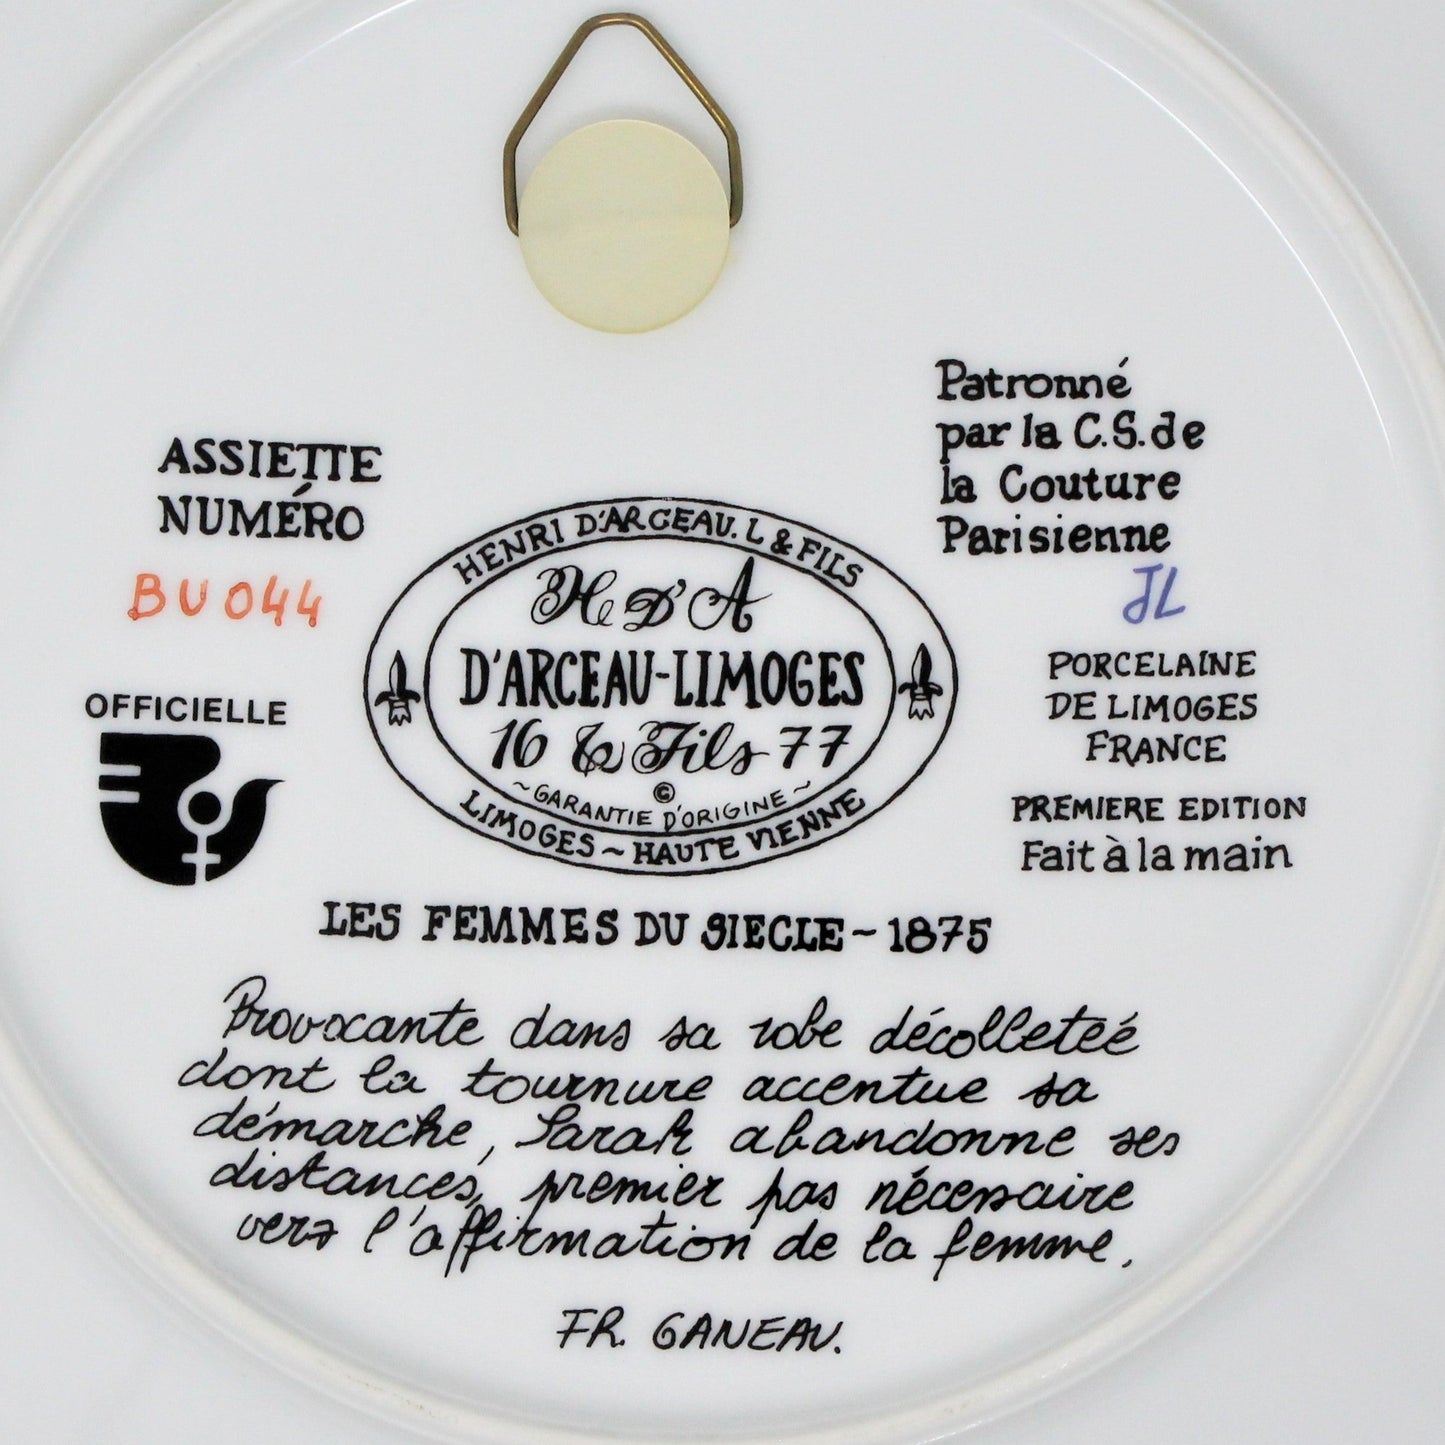 Decorative Plate, D'Arceau Limoges, F Ganeau Les Femmes du Siecle - Women of The Century, Sarah En Tournure, Vintage 1976